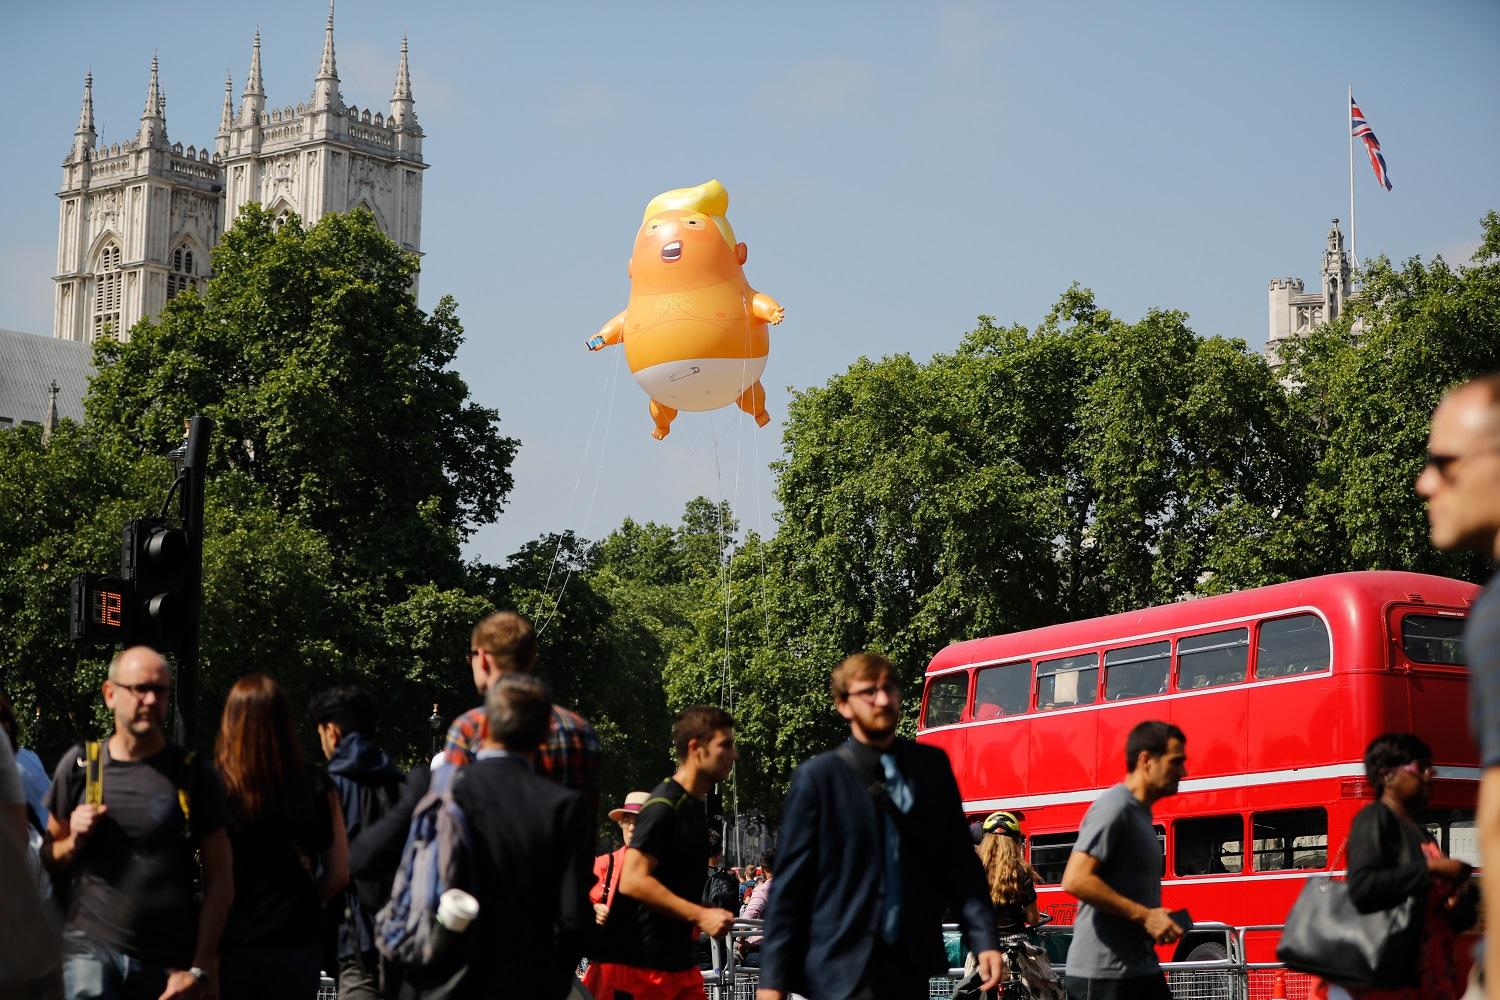 إطلاق بالون يصور دونالد ترامب على هيئة رضيع غاضب في سماء العاصمة البريطانية، لندن، 13 يوليو 2018. أ ف ب 